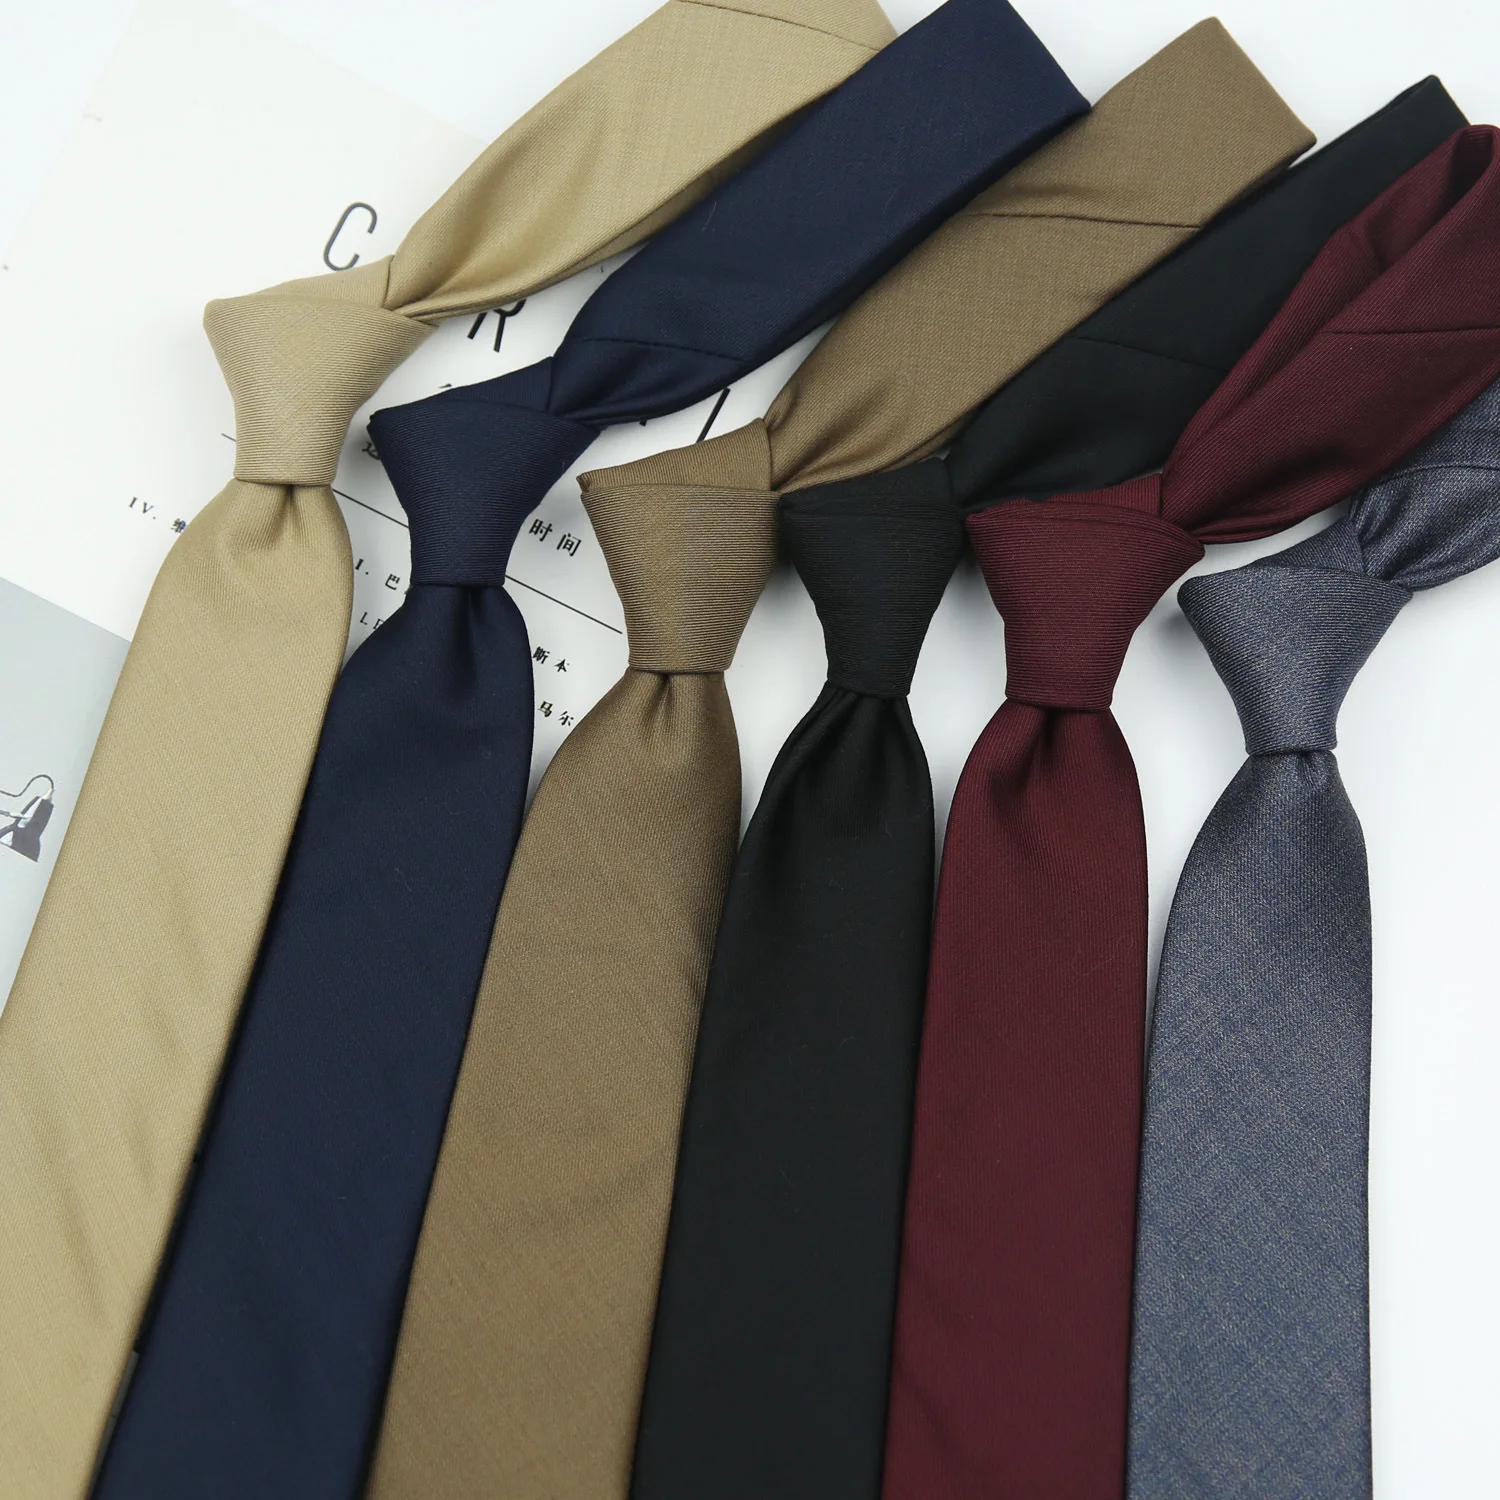 7 см Академический Британский стиль, Хаки, Винно-красный, черный, однотонный полосатый нейлоновый галстук жаккардового переплетения для мужчин, деловой свадебный галстук 0